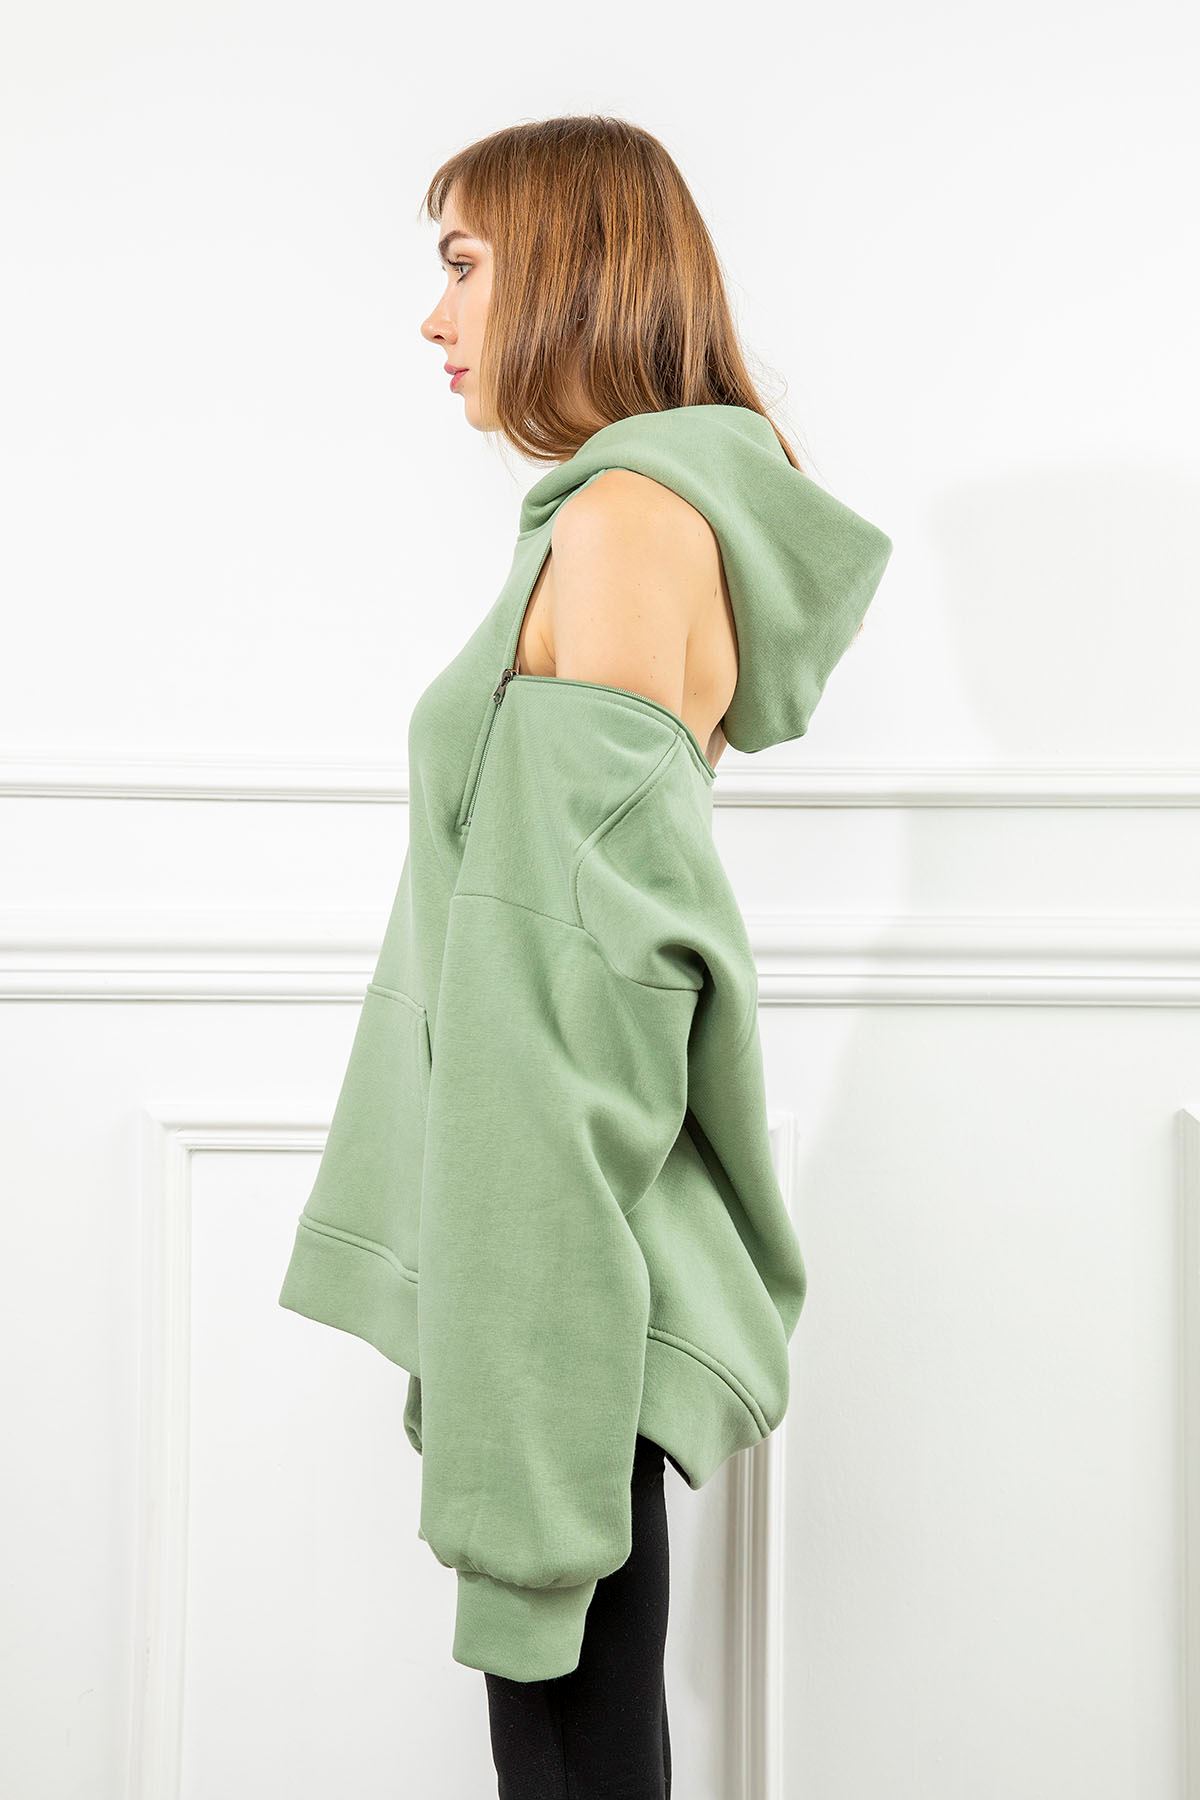 Third Knit Fabric Hooded Below The Hip Oversize Button Women Sweatshirt - Water Green